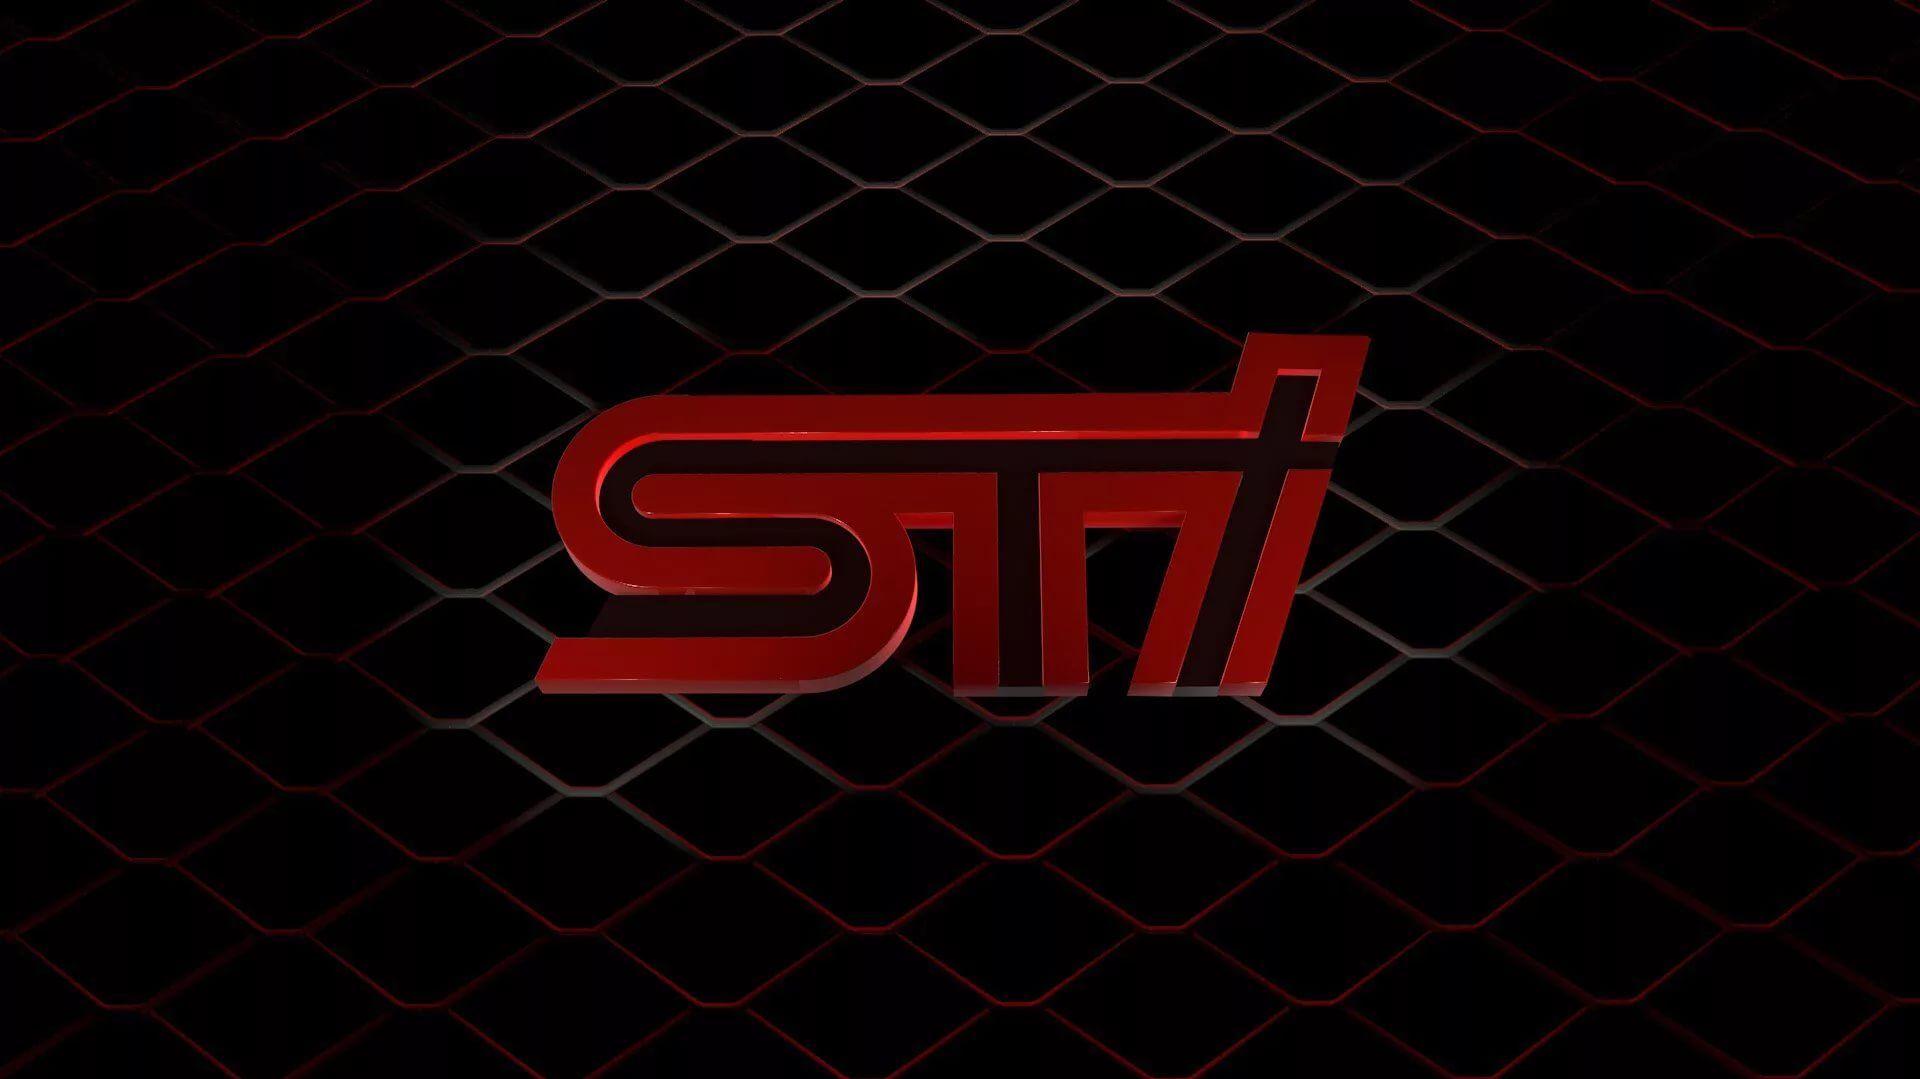 Sti Logo Wallpaper For